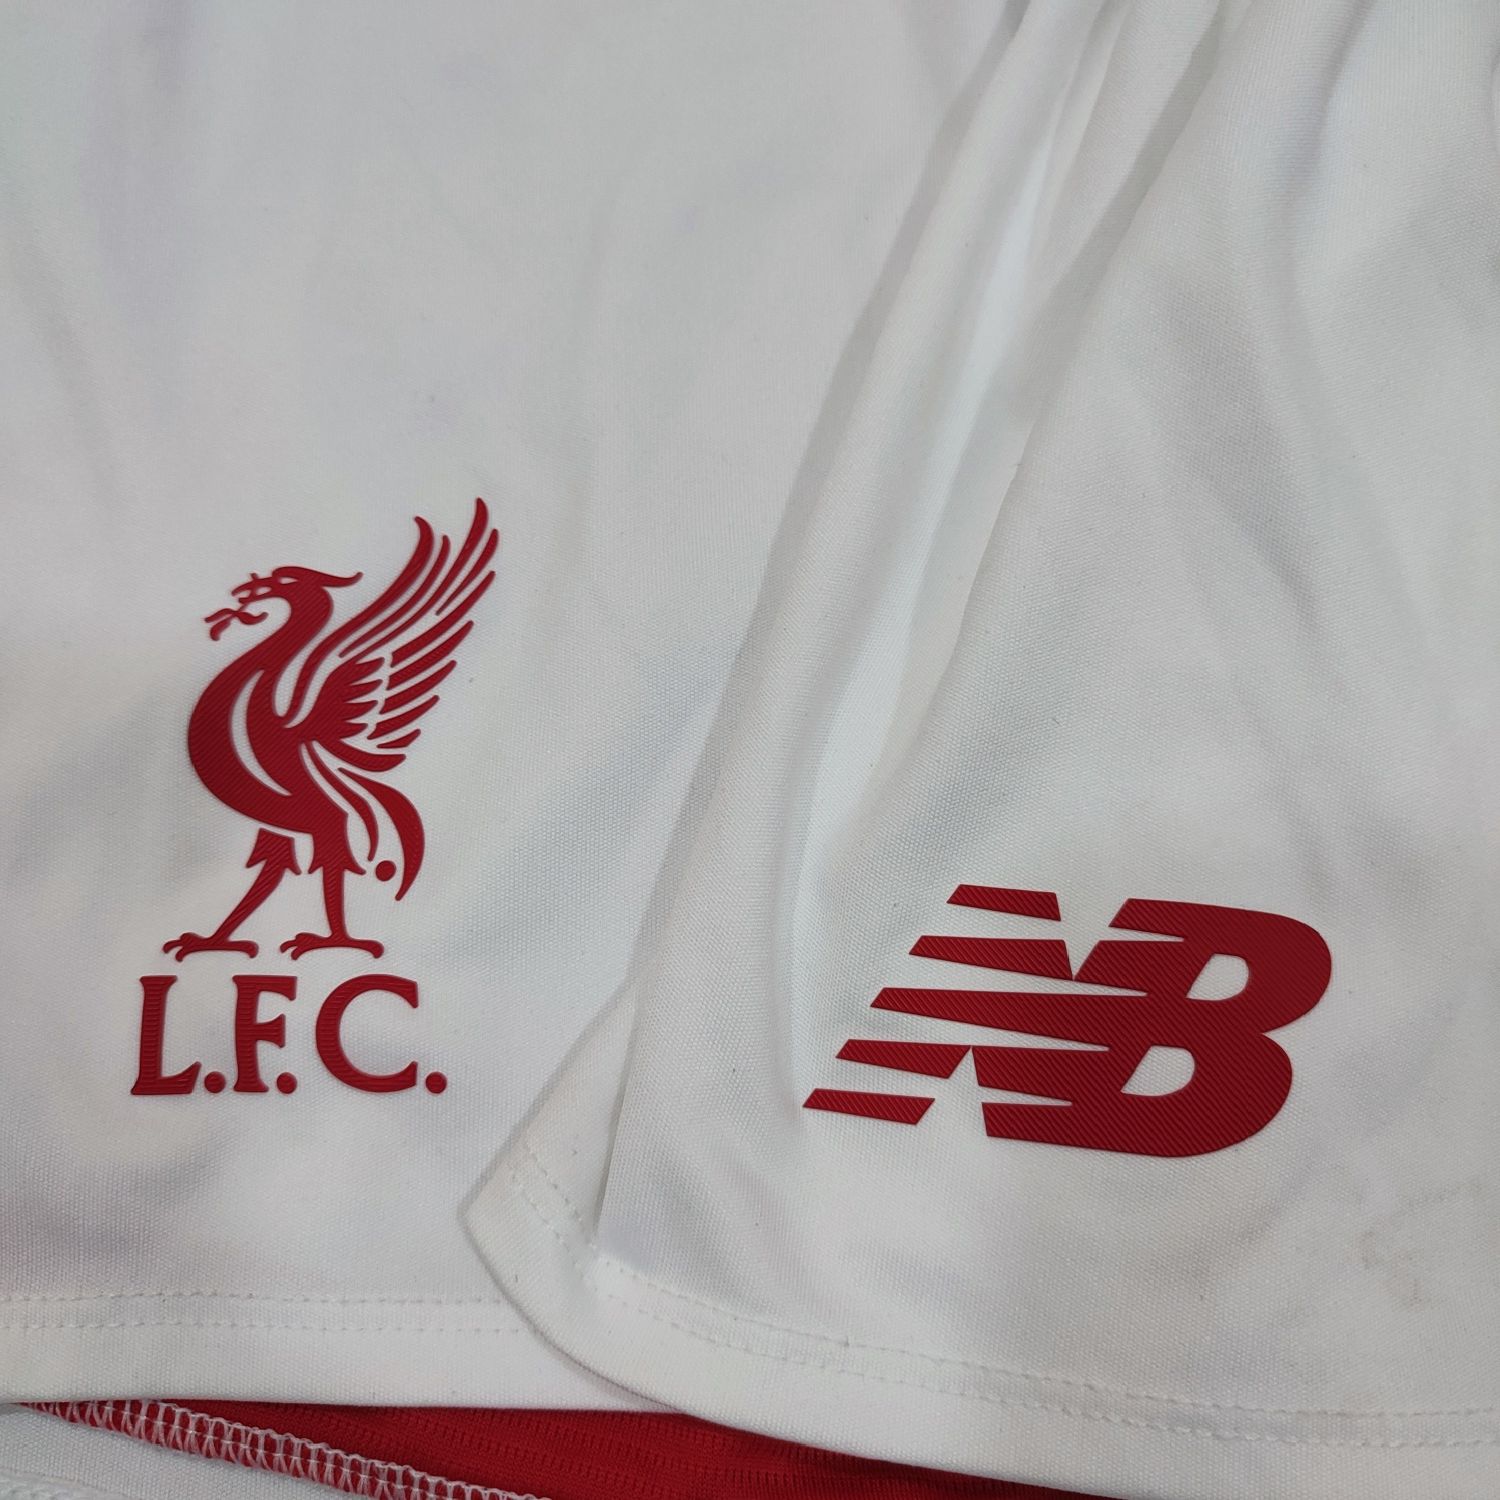 Форма Liverpool футболка шорти New Balance розмір S